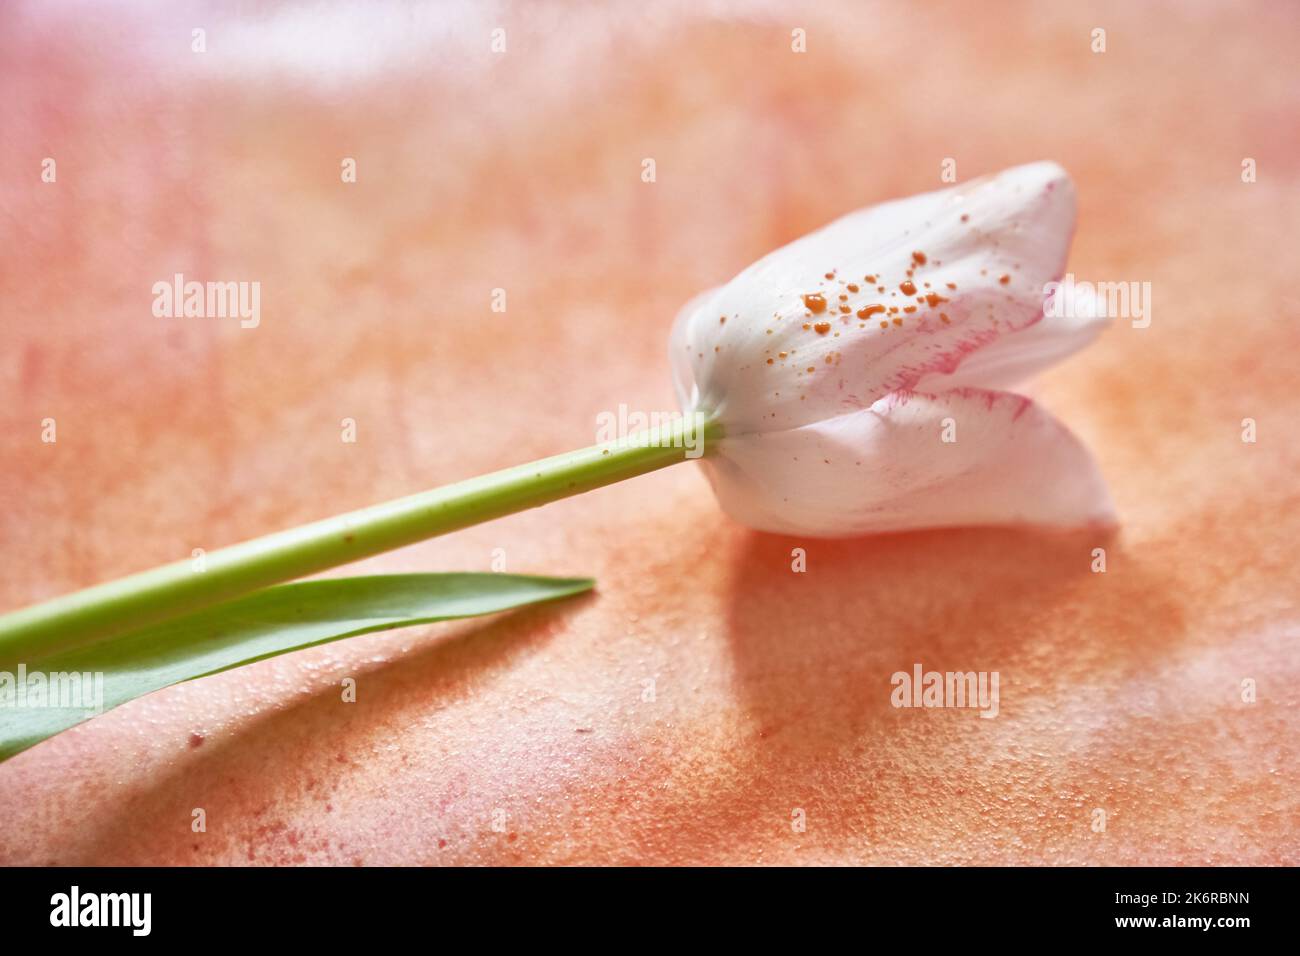 Un elegante tulipano per il tuo design.un tulipano bianco con gocce di vernice si trova su carta dipinta con acquerello arancione. Foto di alta qualità Foto Stock